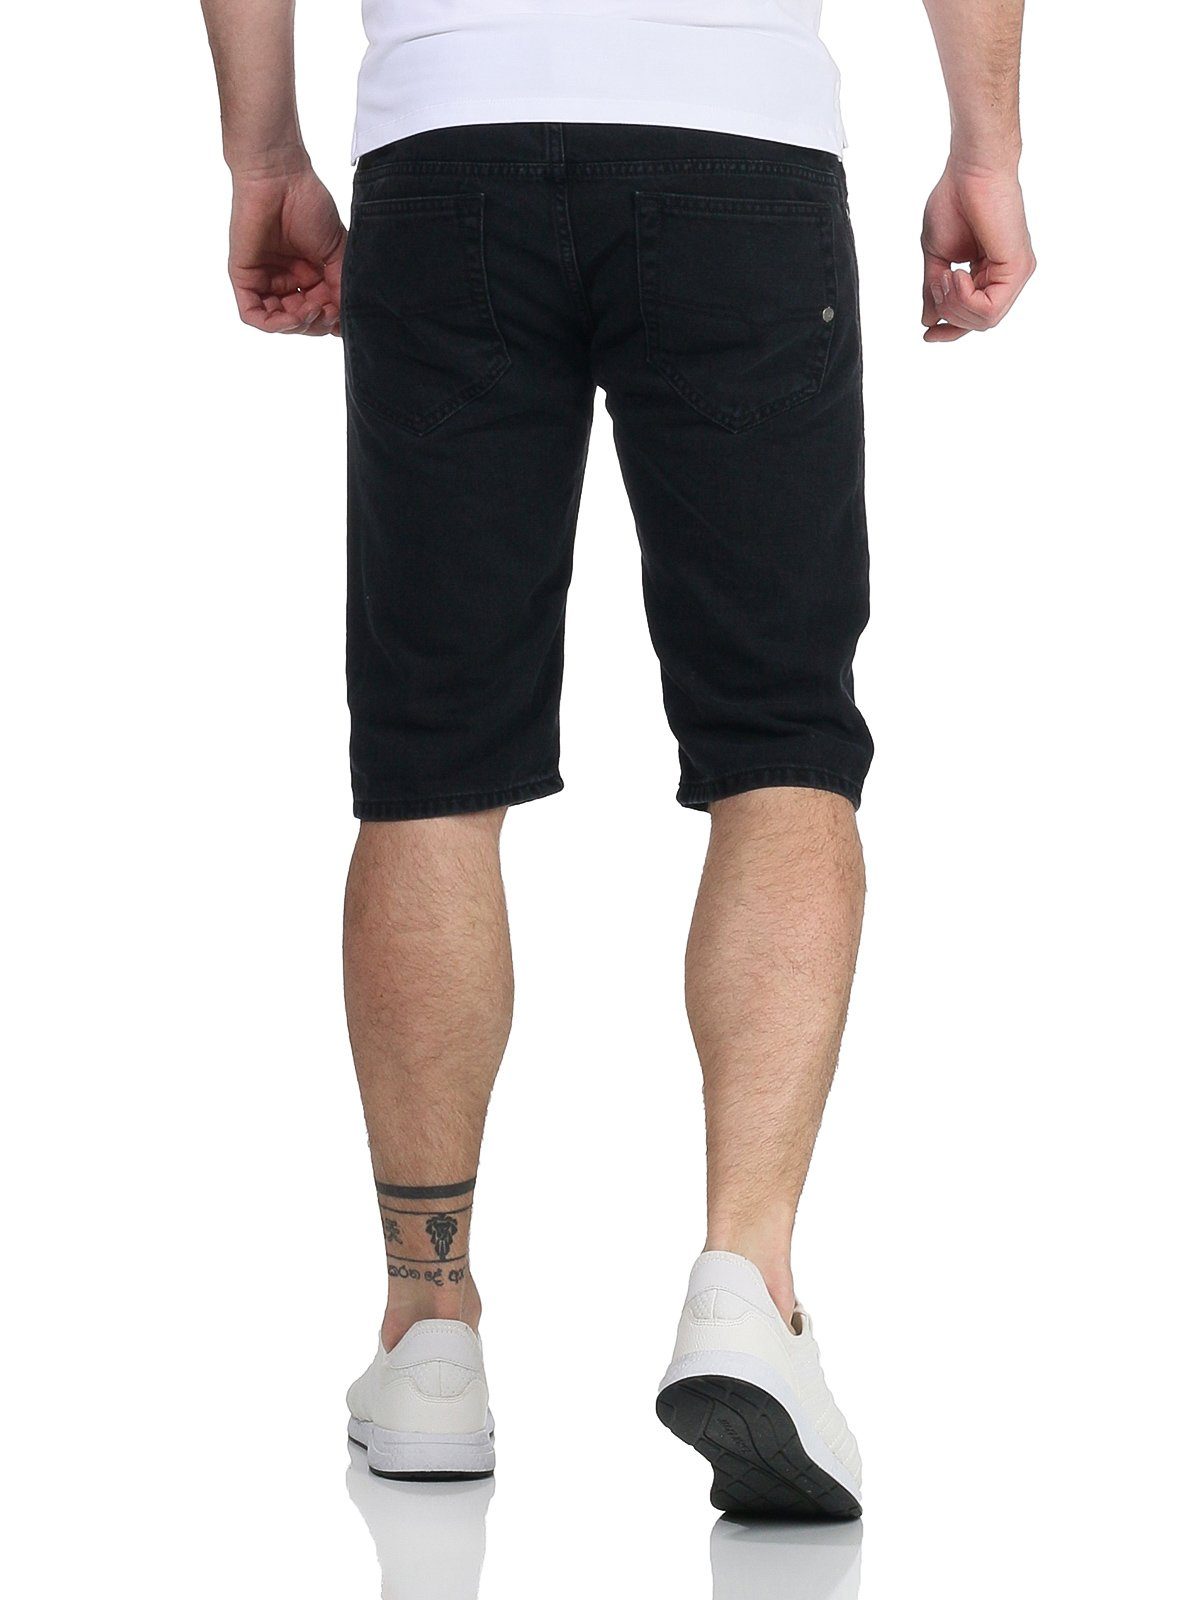 Diesel kurze Shorts, Jeans Herren dezenter RG48R R98V4 Kroshort Schwarz Shorts Used-Look Jeansshorts Hose